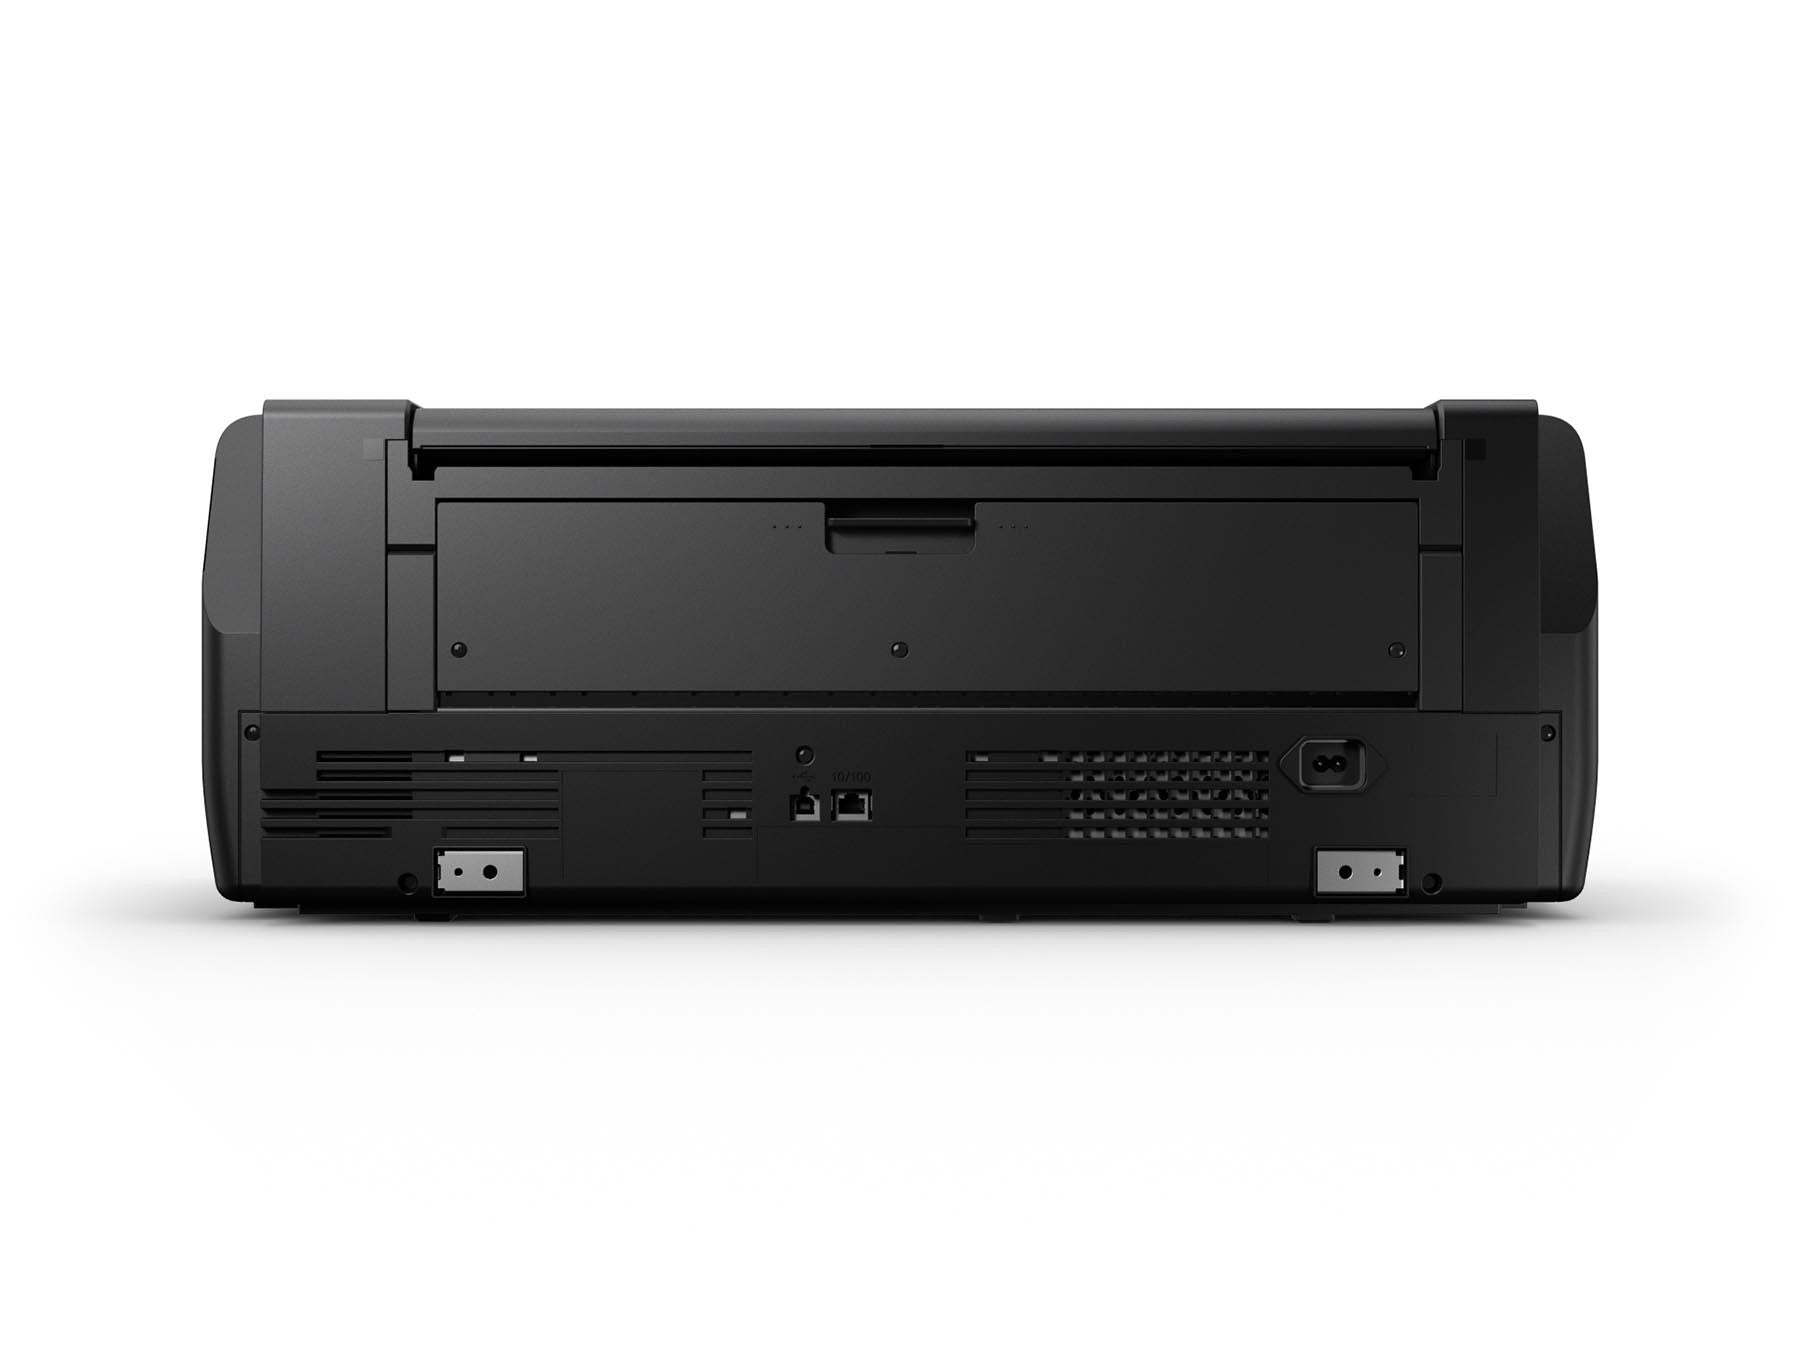 Epson Surecolor P800 Printer, printers large format, Epson - Pictureline  - 3